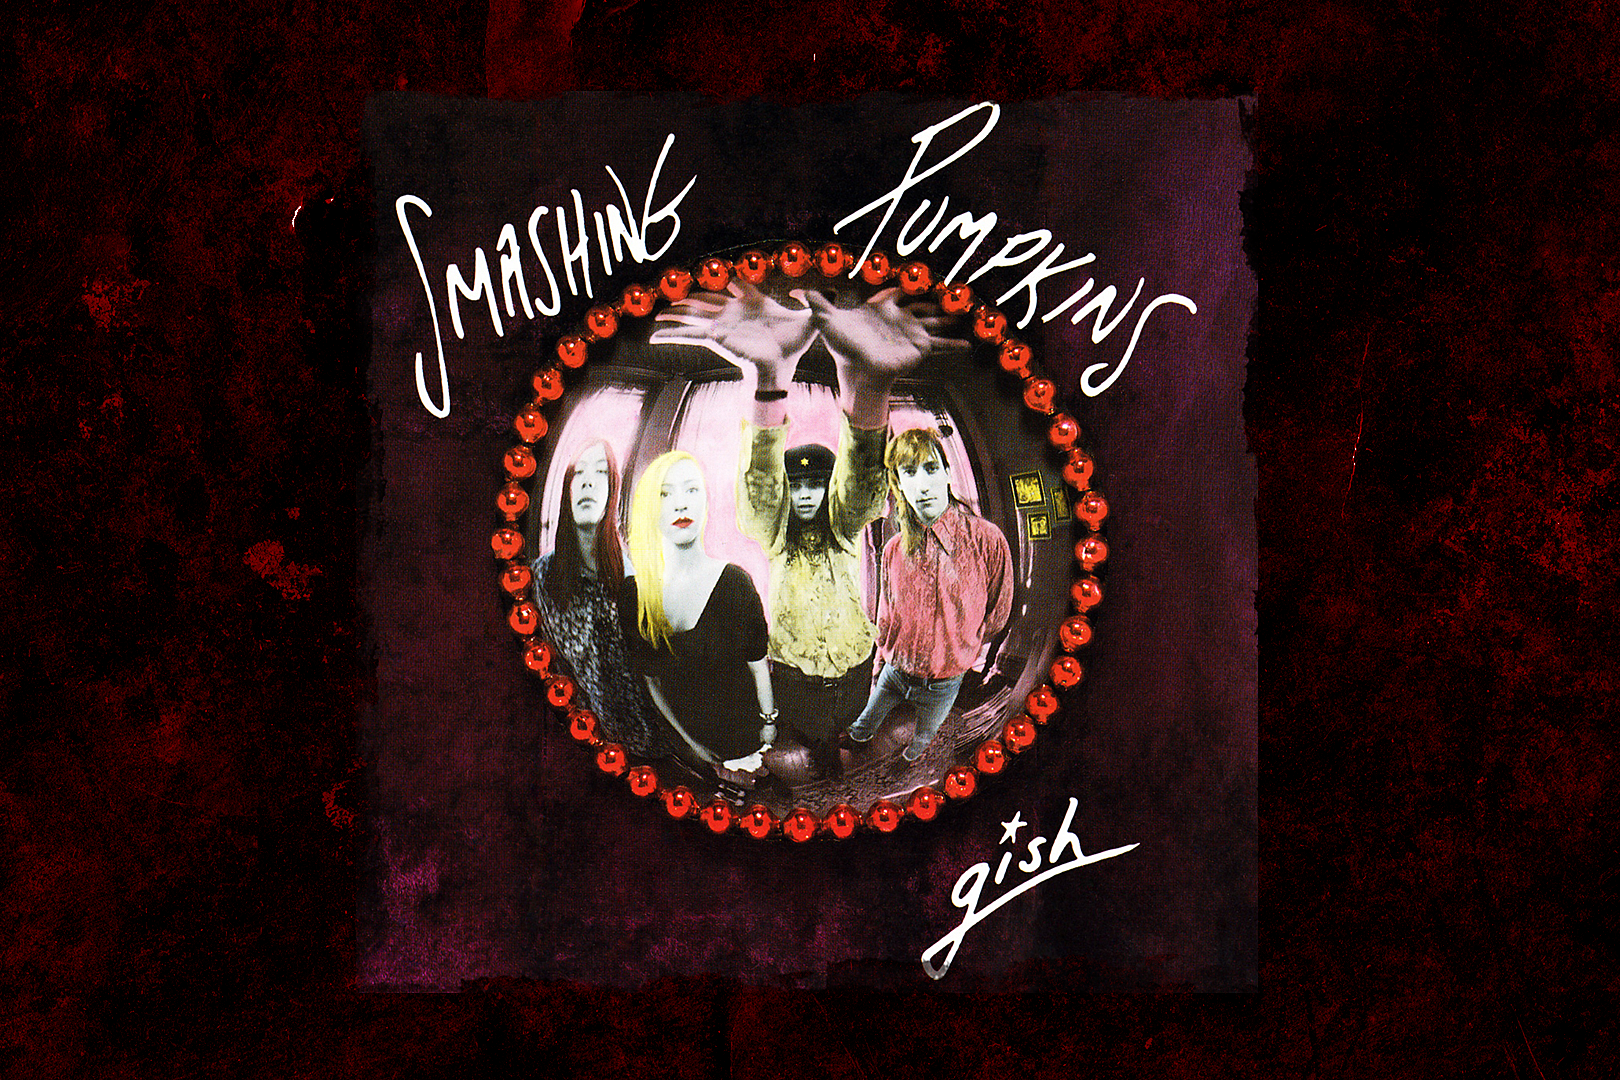 31 Years Ago: Smashing Pumpkins Release Debut Album ‘Gish’